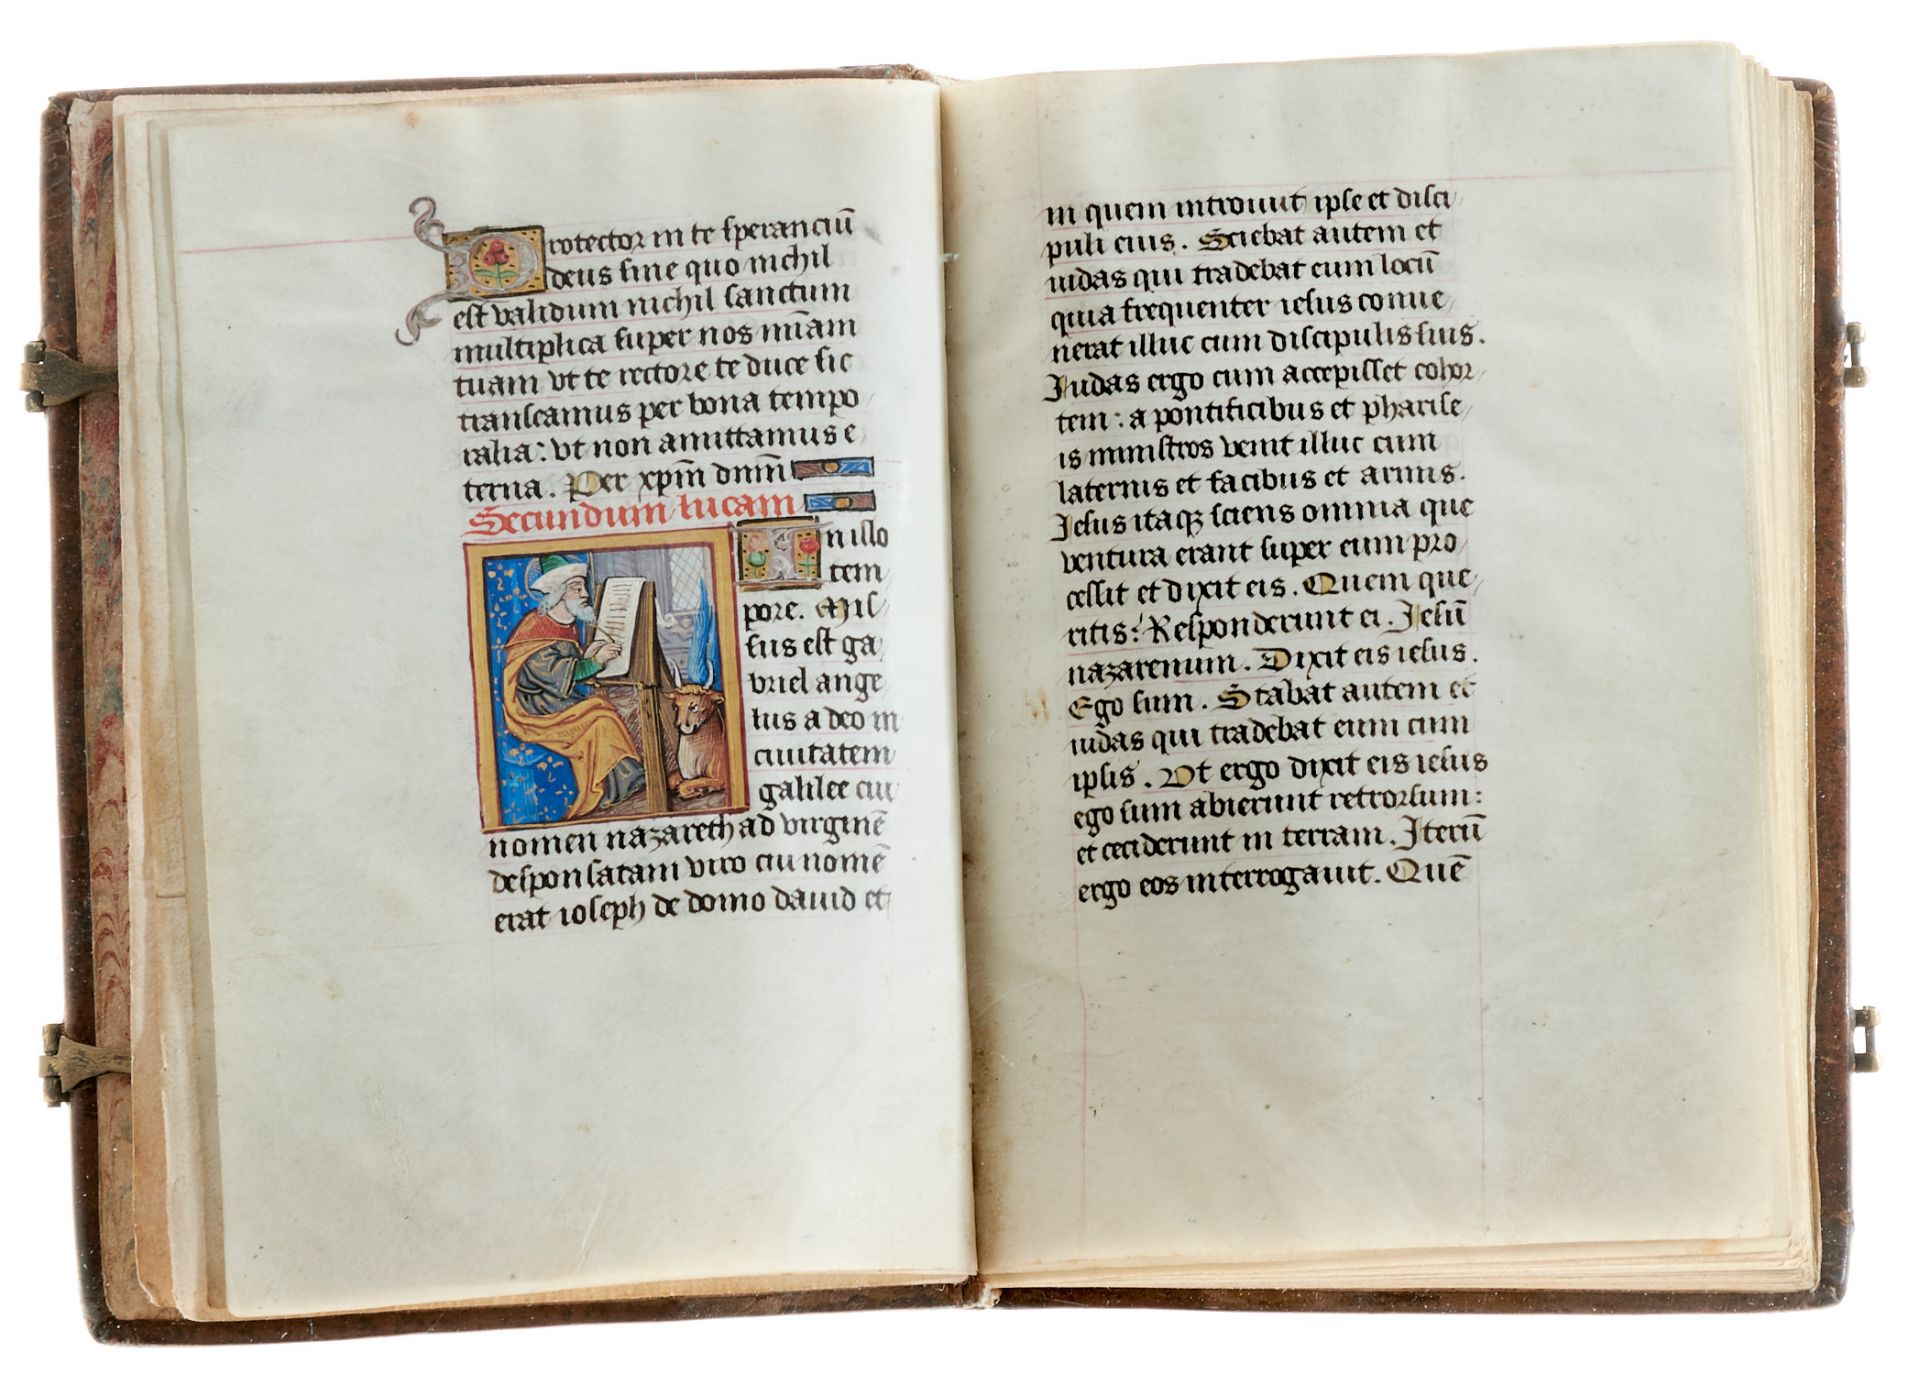 Pariser Stundenbuch. Lateinische Handschrift auf Pergament. Paris, um 1500. Ca. 14 x 10 cm. - Image 4 of 26